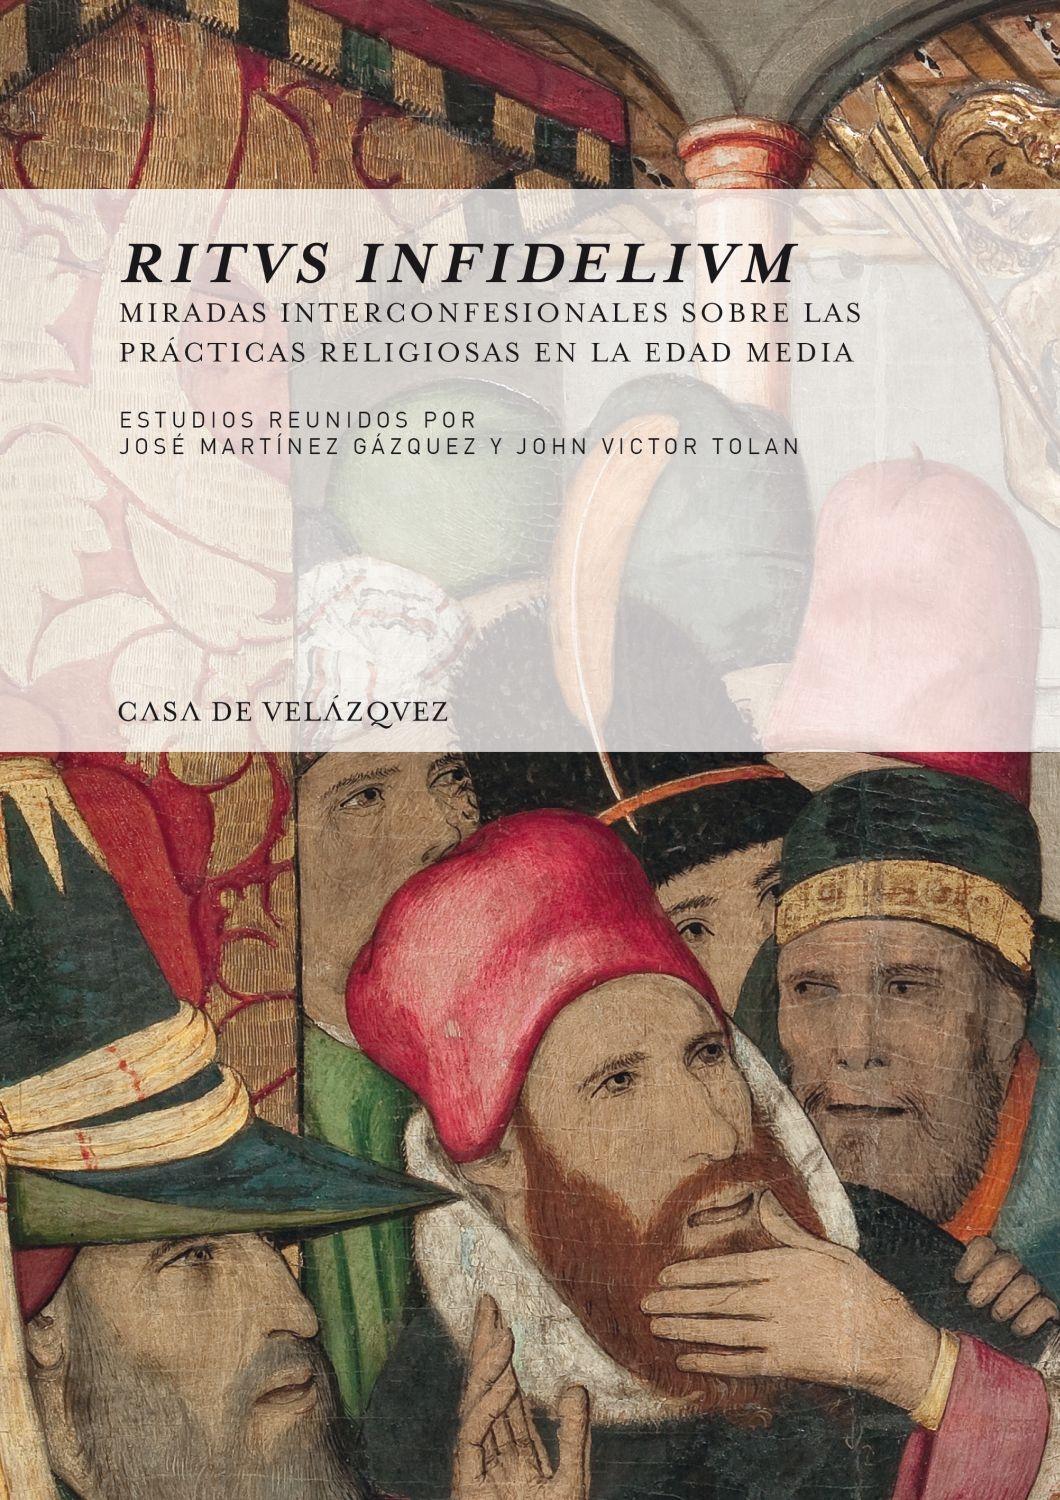 RITUS INFIDELIUM "Miradas interconfesionales sobre las prácticas religiosas en la Edad Med"